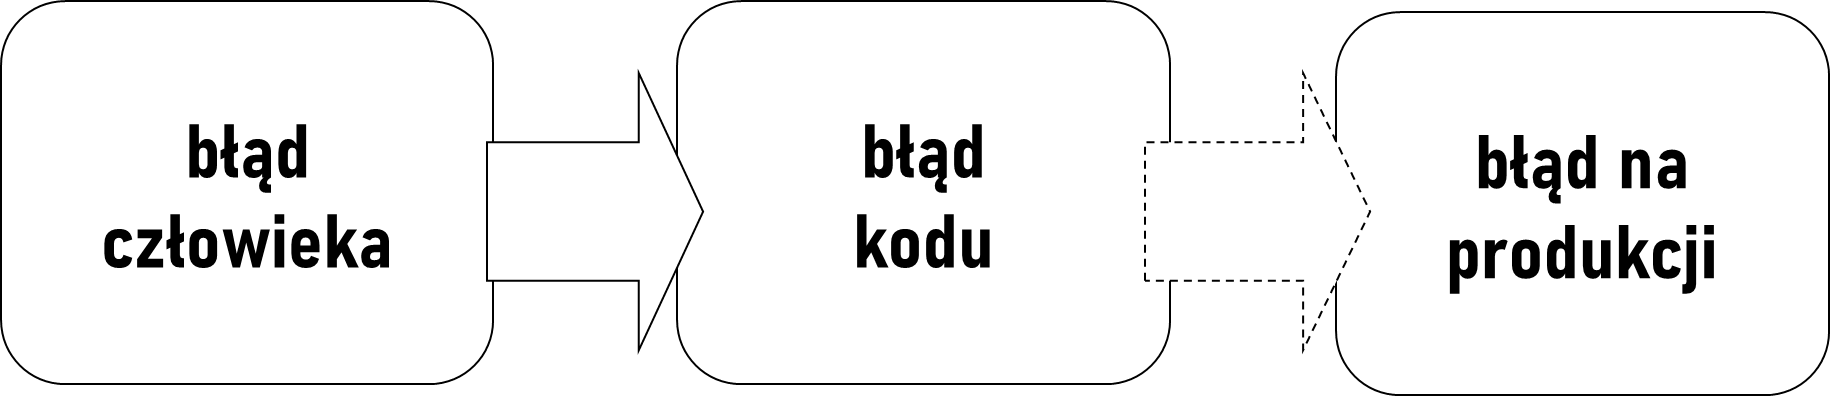 blad_kodu.png